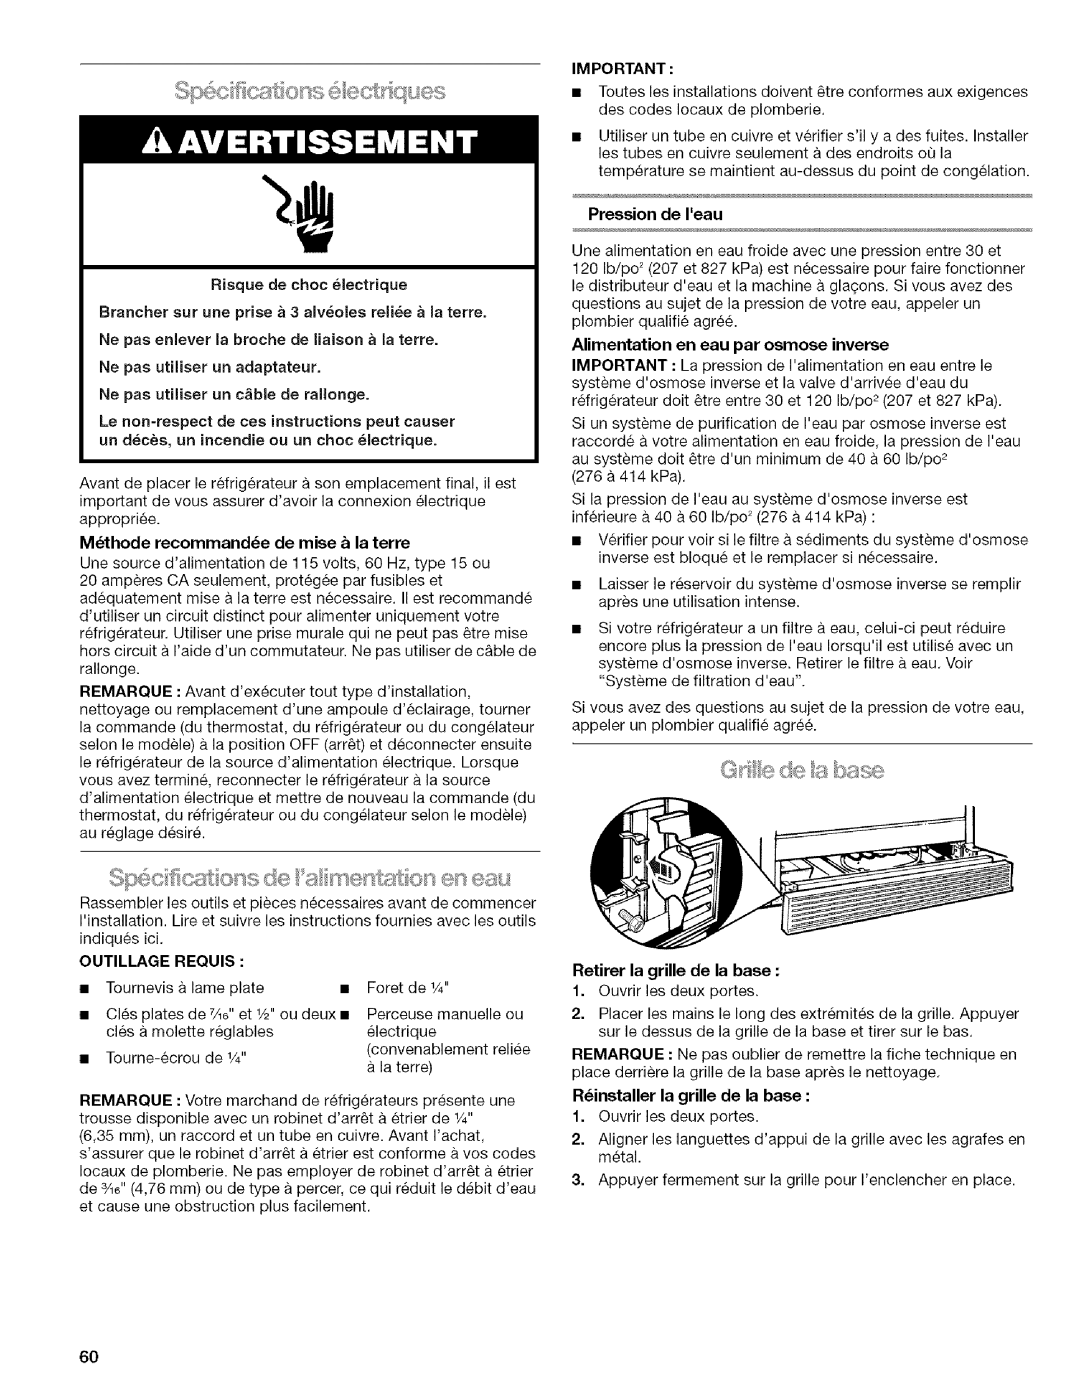 Kenmore 2318589 manual Pression de Ieau, Ne pas utiliser un adaptateur, Ne pas utiliser un c ble de ralionge, REQUlS 